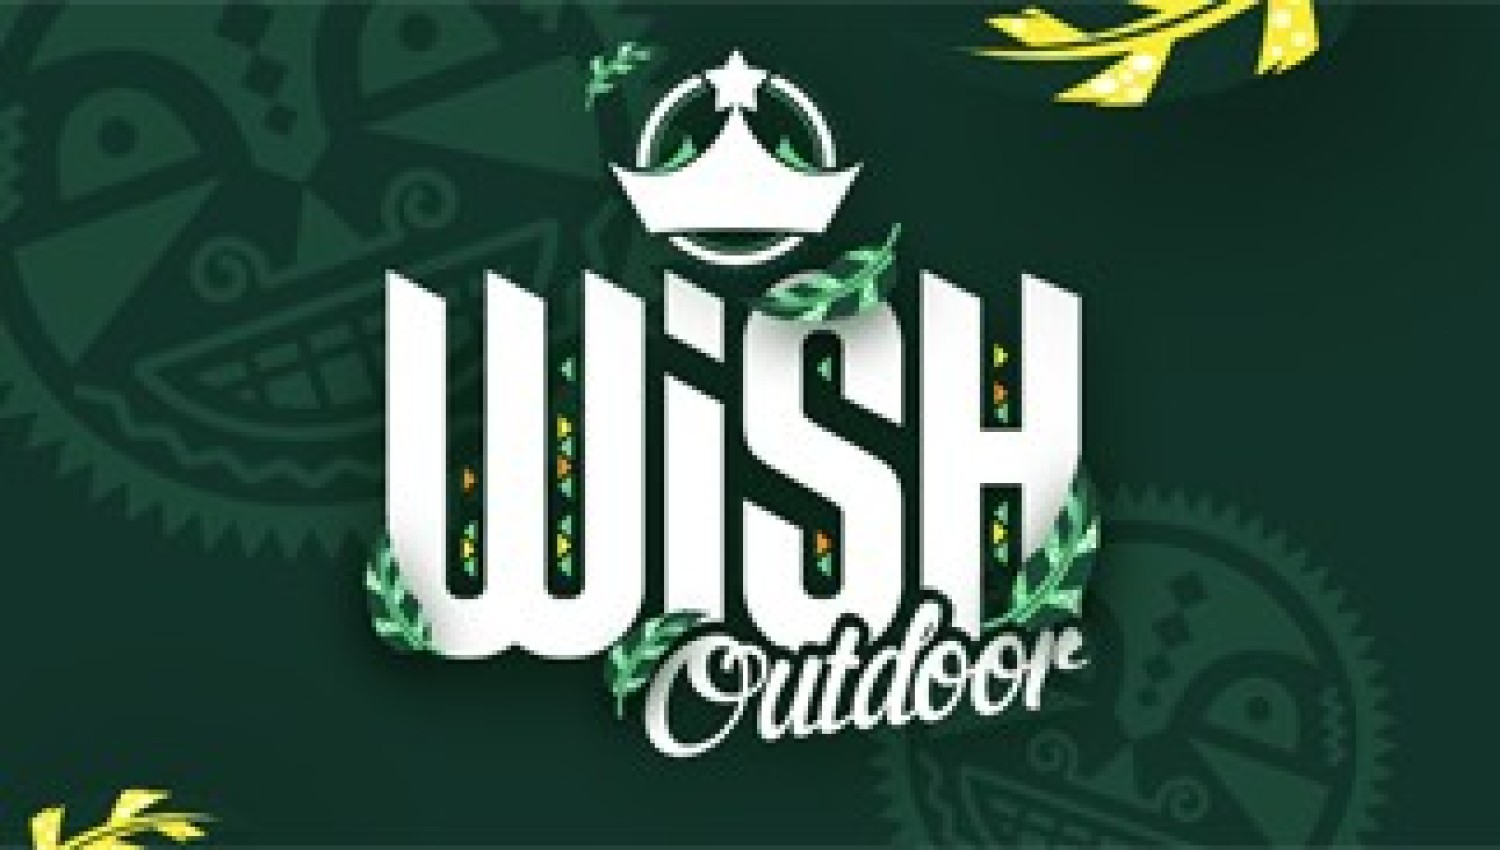 Party nieuws: Win 2 Full Weekend tickets voor WiSH Outdoor 2018!